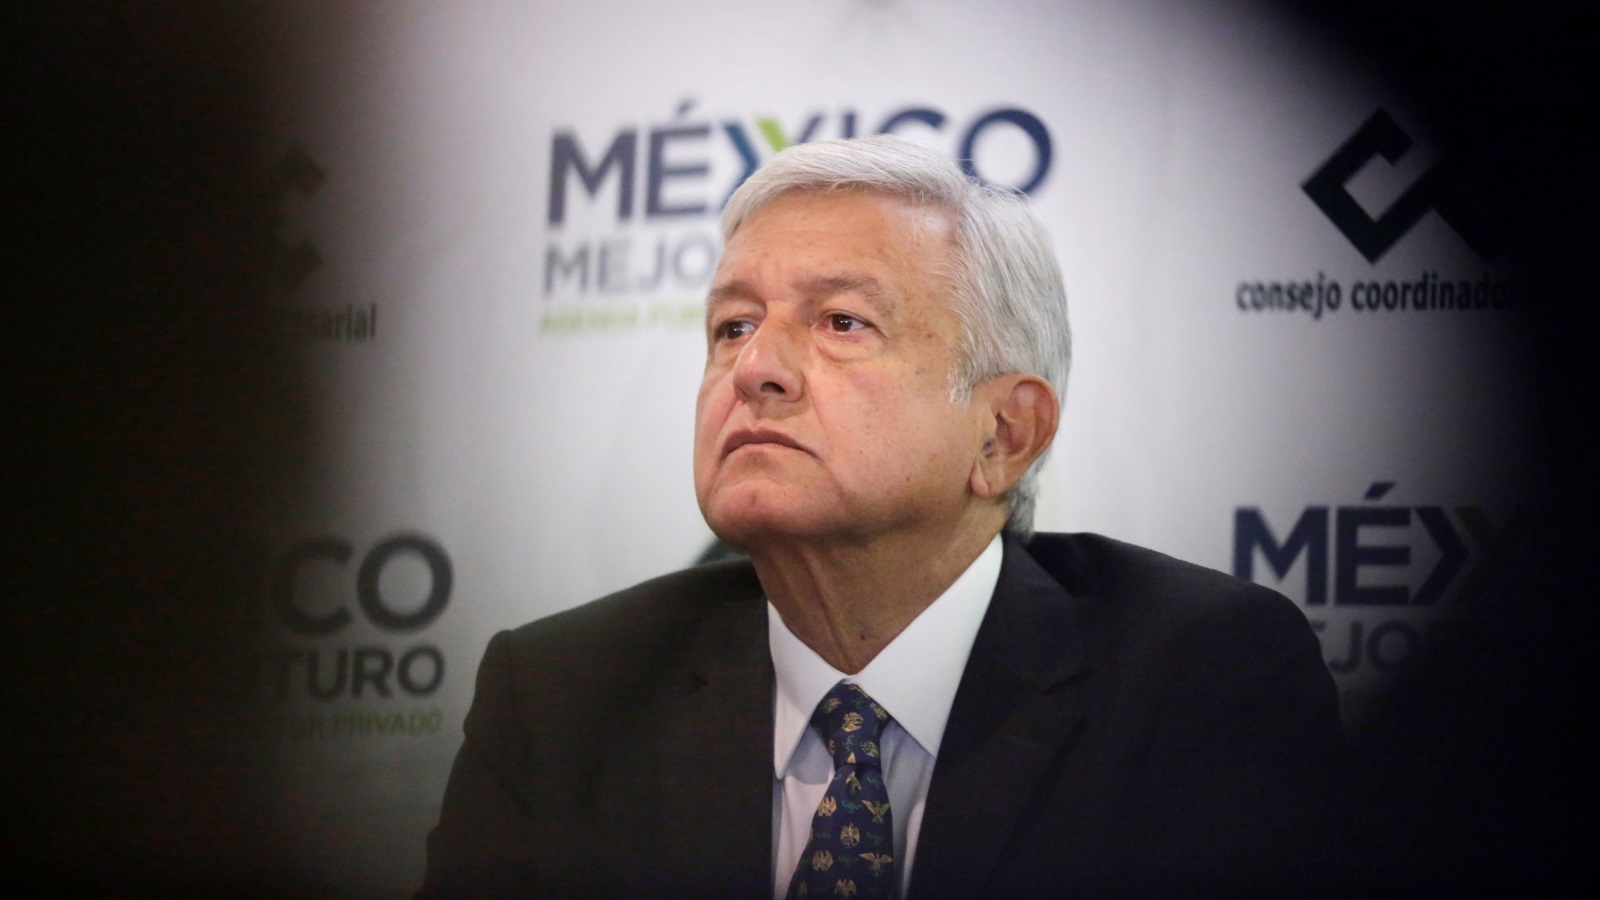 إن الرغبة في التغيير في المكسيك، فضلا عن عدم الكفاءة وفقدان مصداقية الإدارة السابقة، قد جعل فوز أملو حتمياً